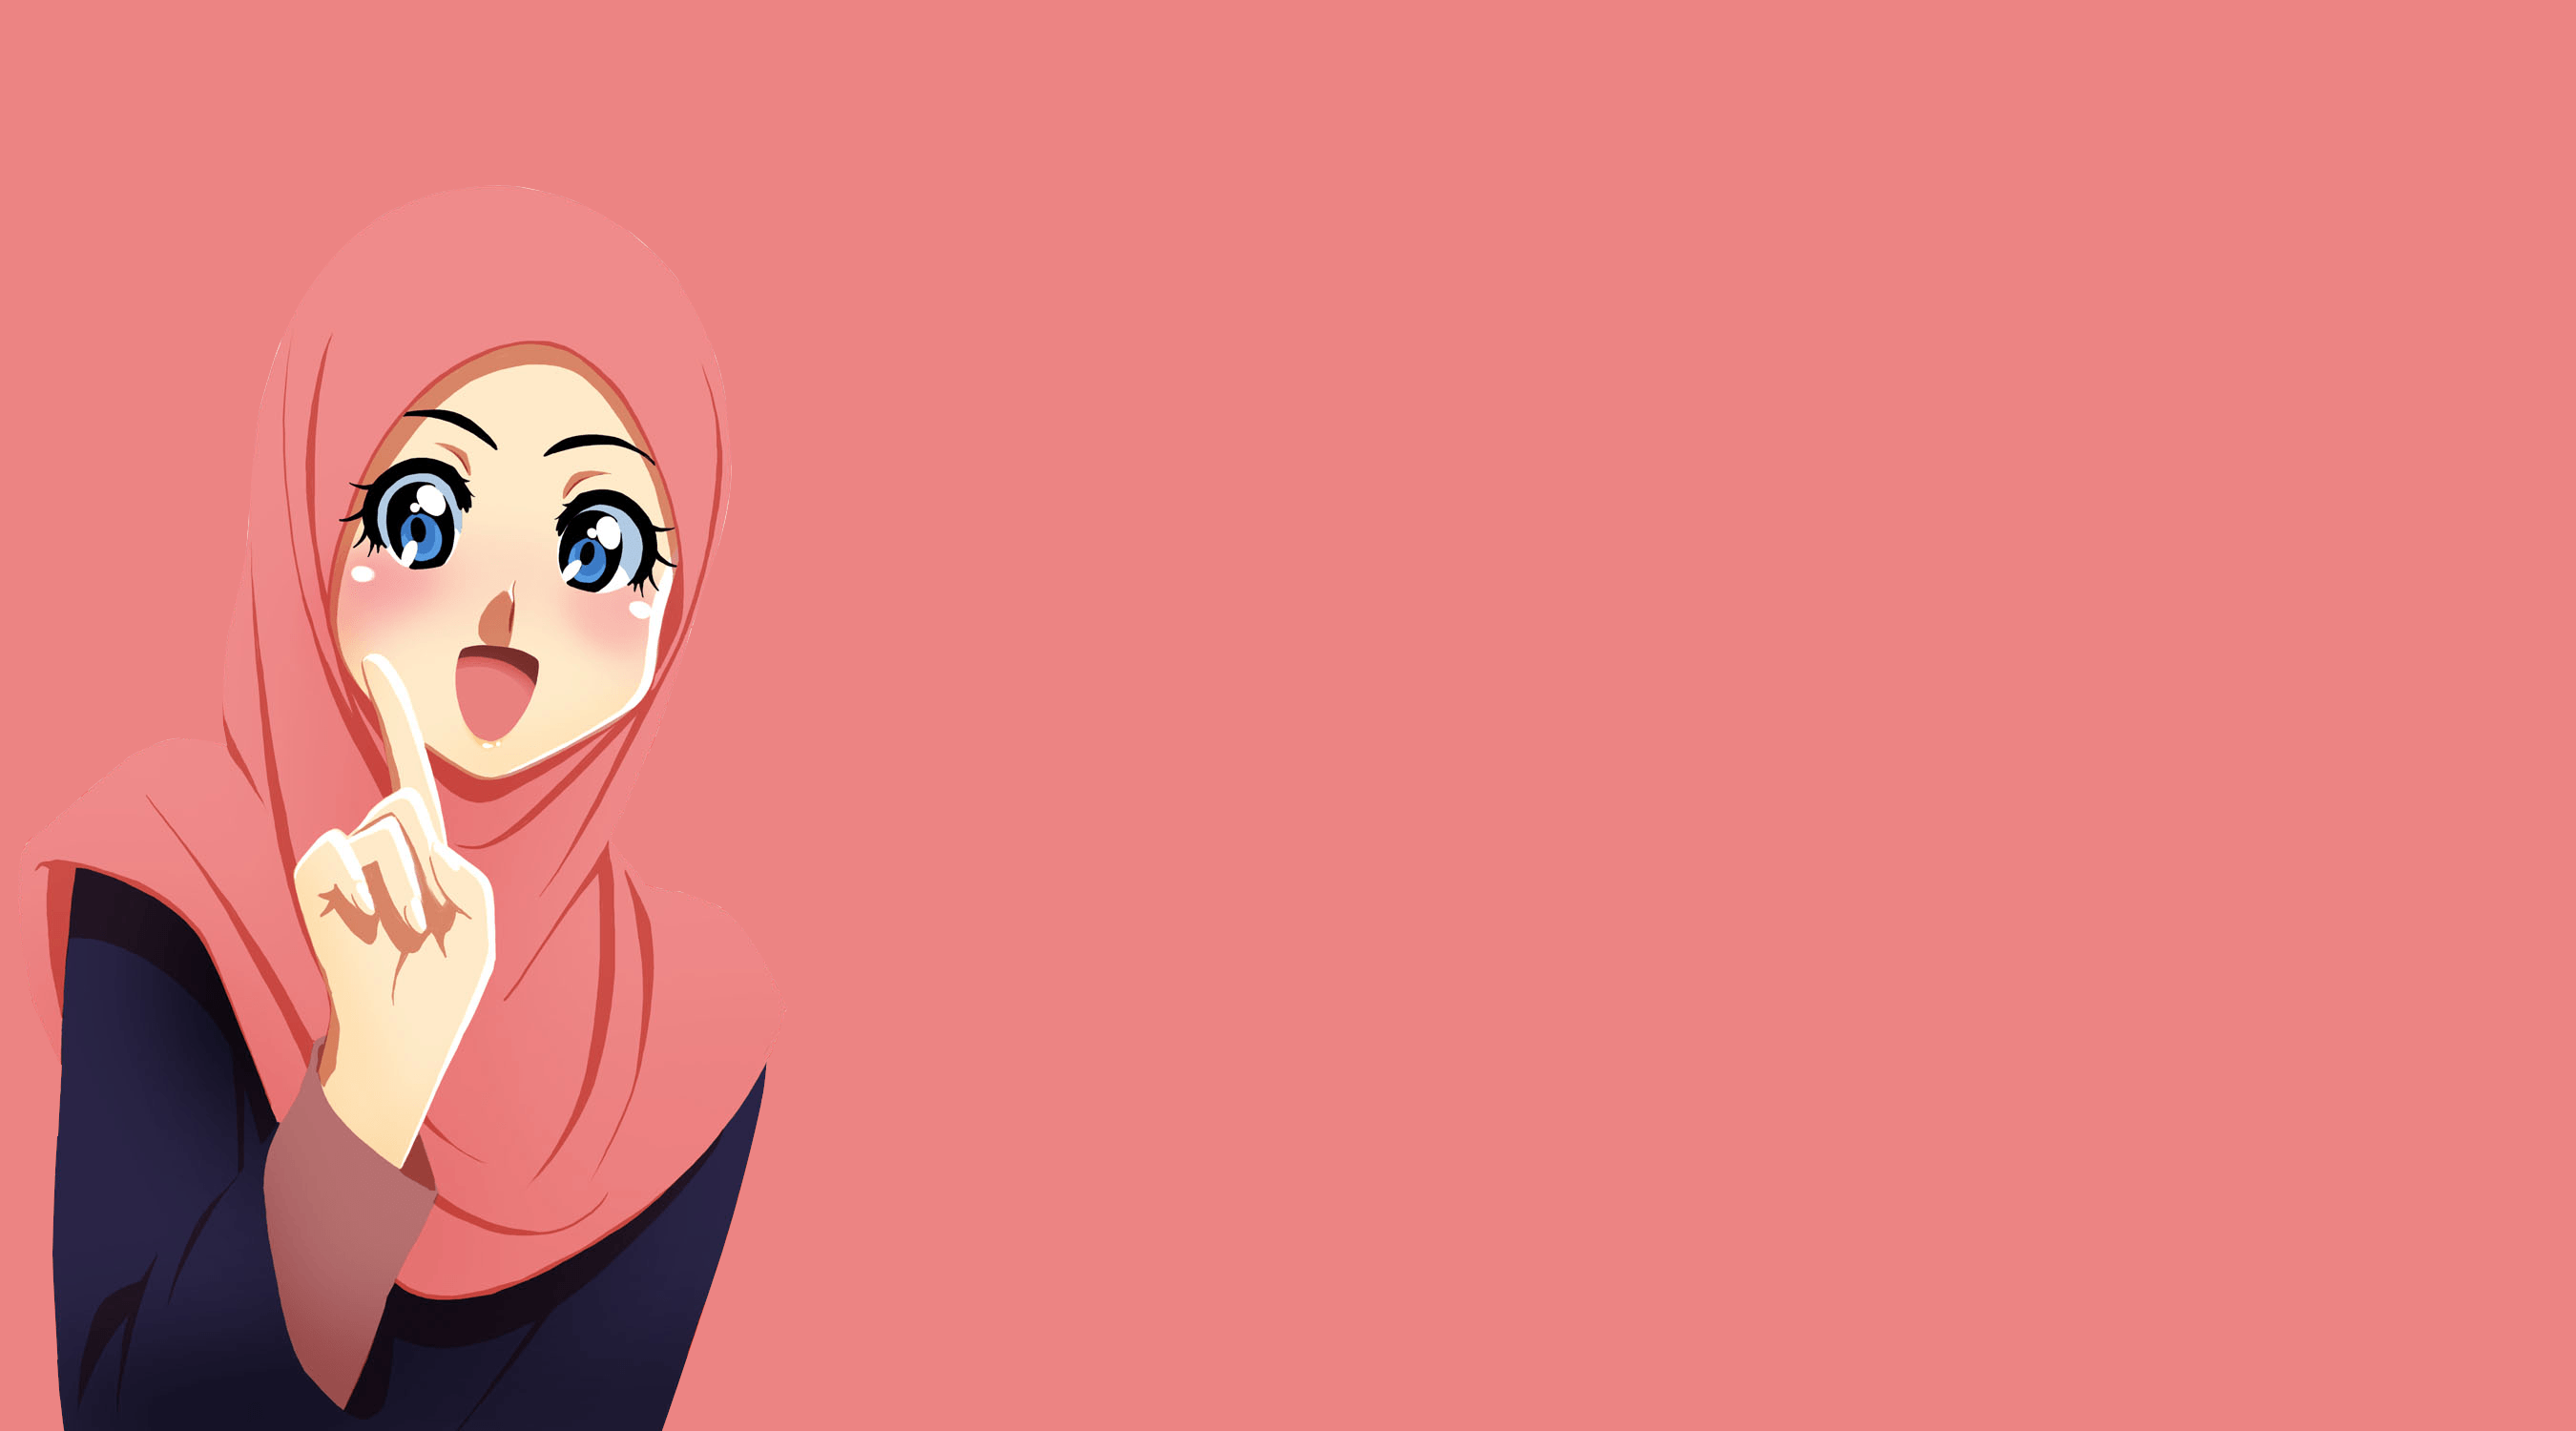 Anime hijab girl Wallpapers Download